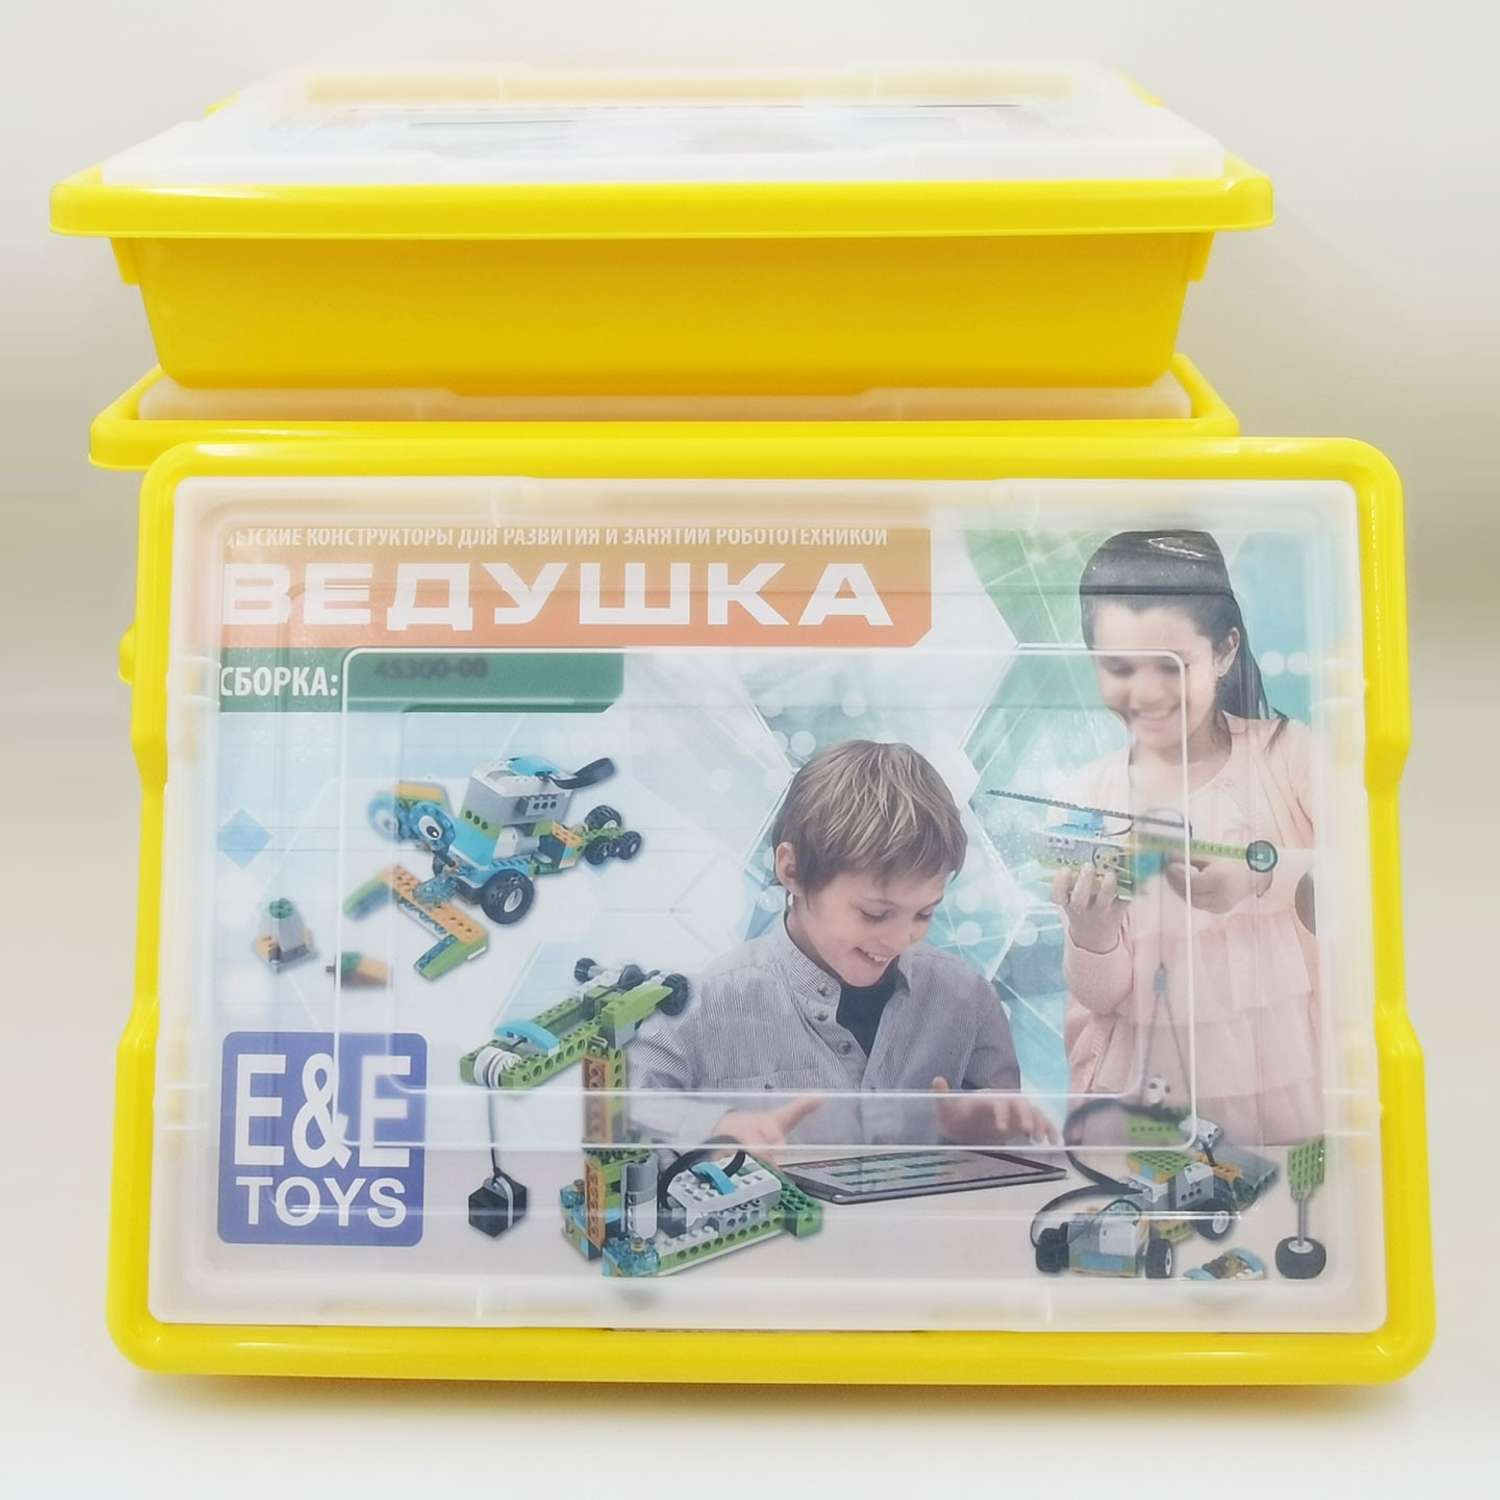 Образовательный набор EE Toys Конструктор для занятий робототехникой «Ведушка» сборка 45300-00 - фото 2